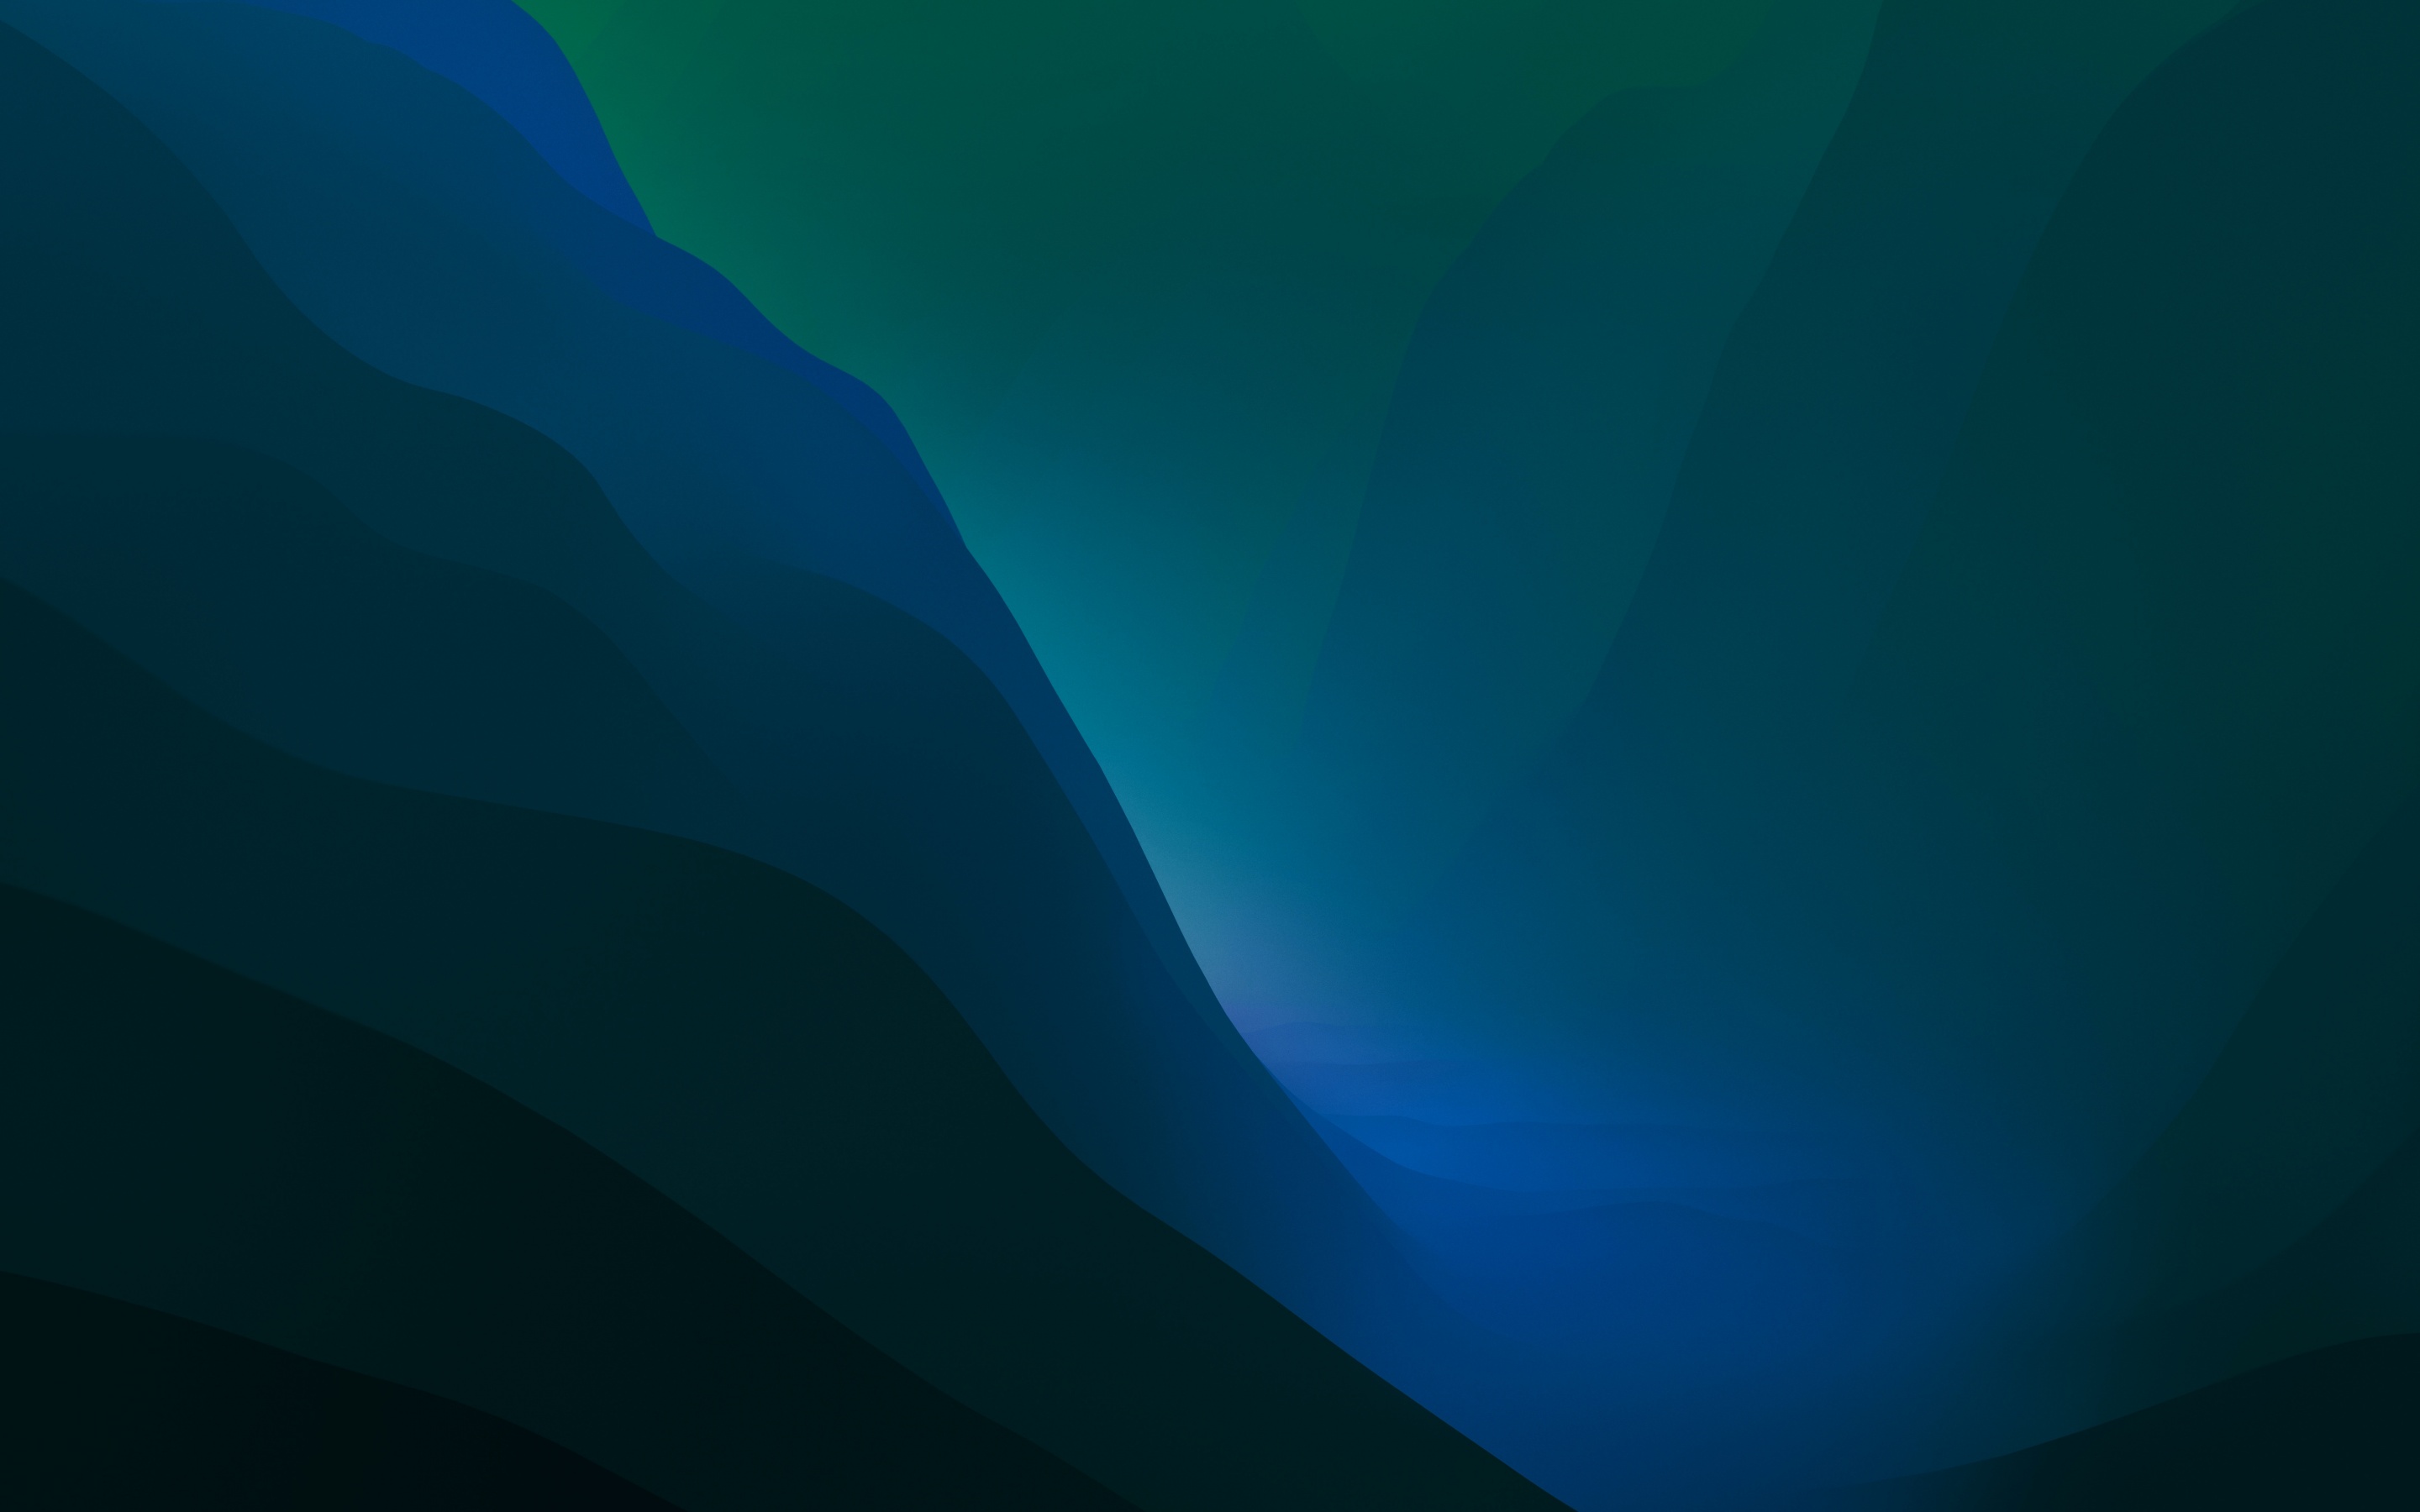 Được cập nhật lần đầu tiên trong macOS Monterey mới nhất, bức hình nền Green gradient 4K sẽ khiến bạn thích thú với màu sắc tươi tắn và hiện đại. Hình ảnh này sẽ mang lại cho bạn cảm giác tươi mới và thư giãn khi làm việc với máy tính của mình.